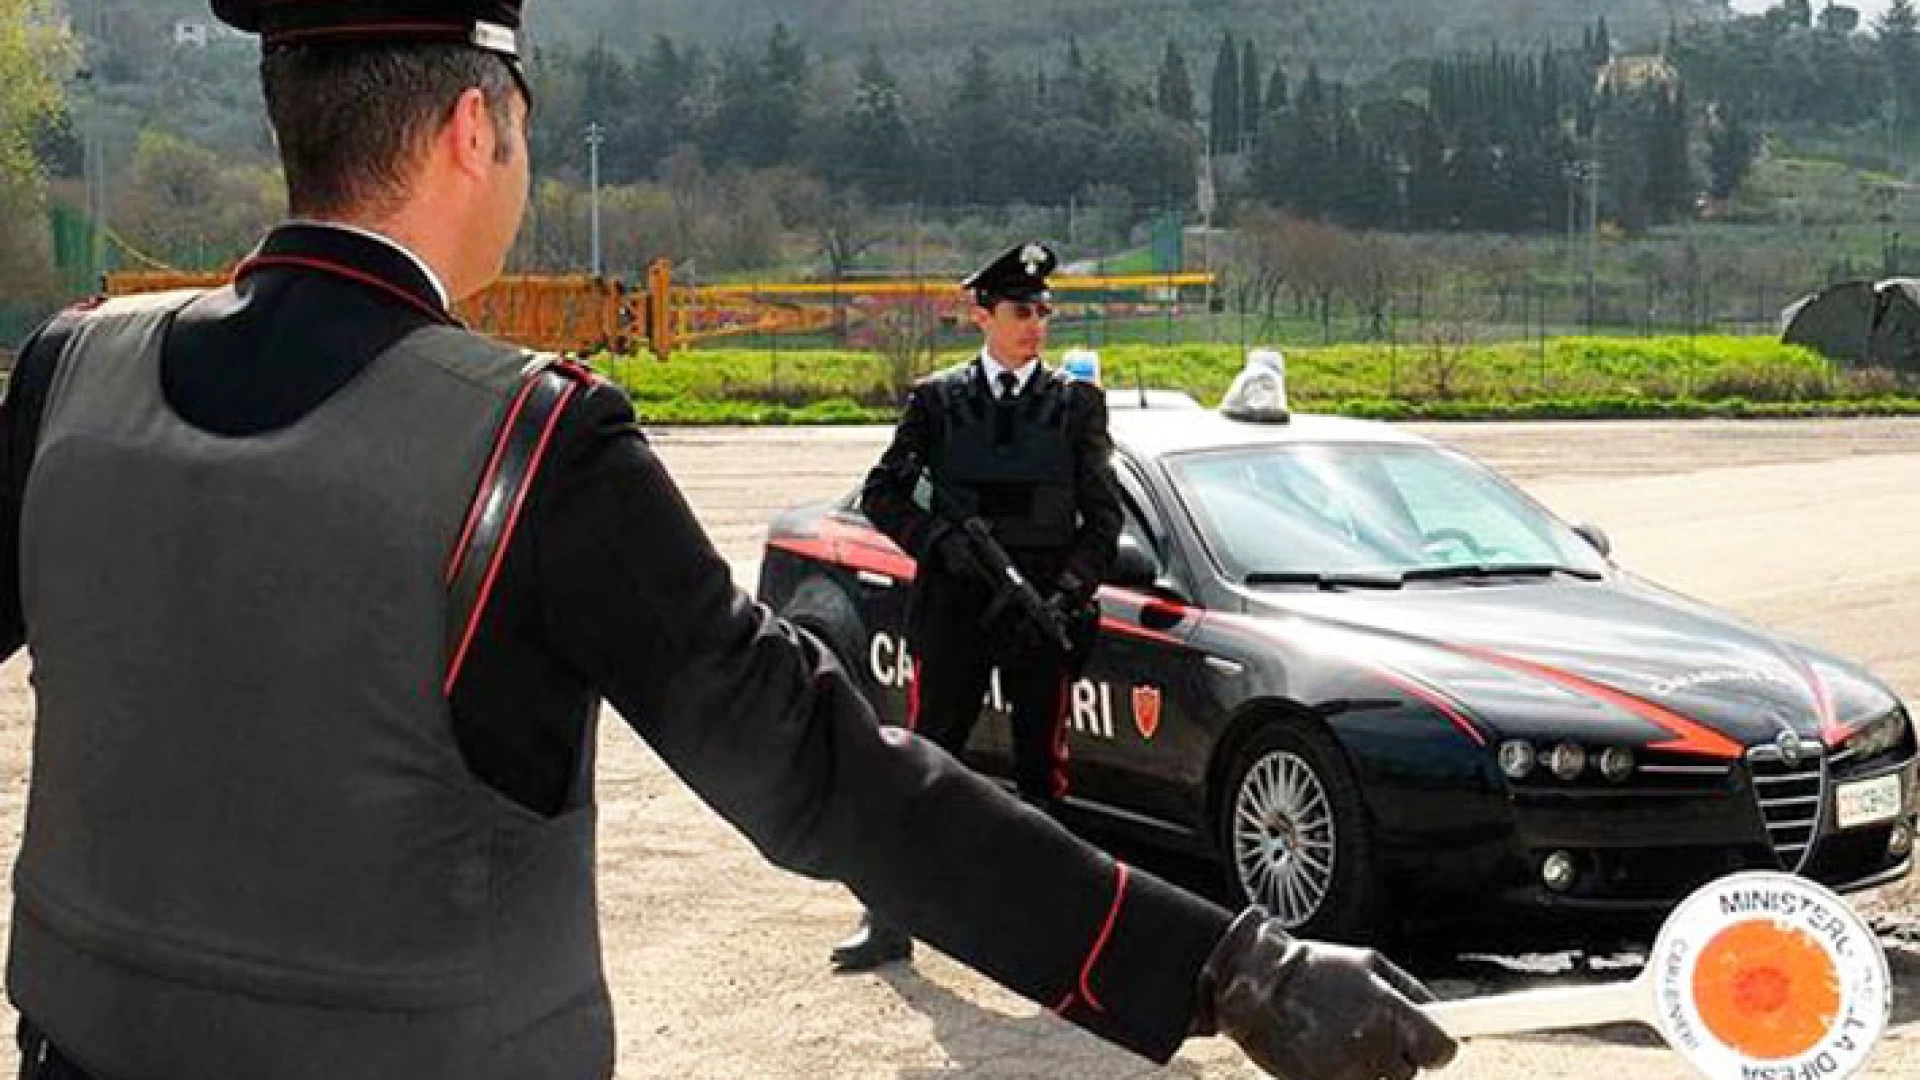 Isernia: Weekend sicuro, controlli a tappeto dei Carabinieri in tutto il territorio della provincia.